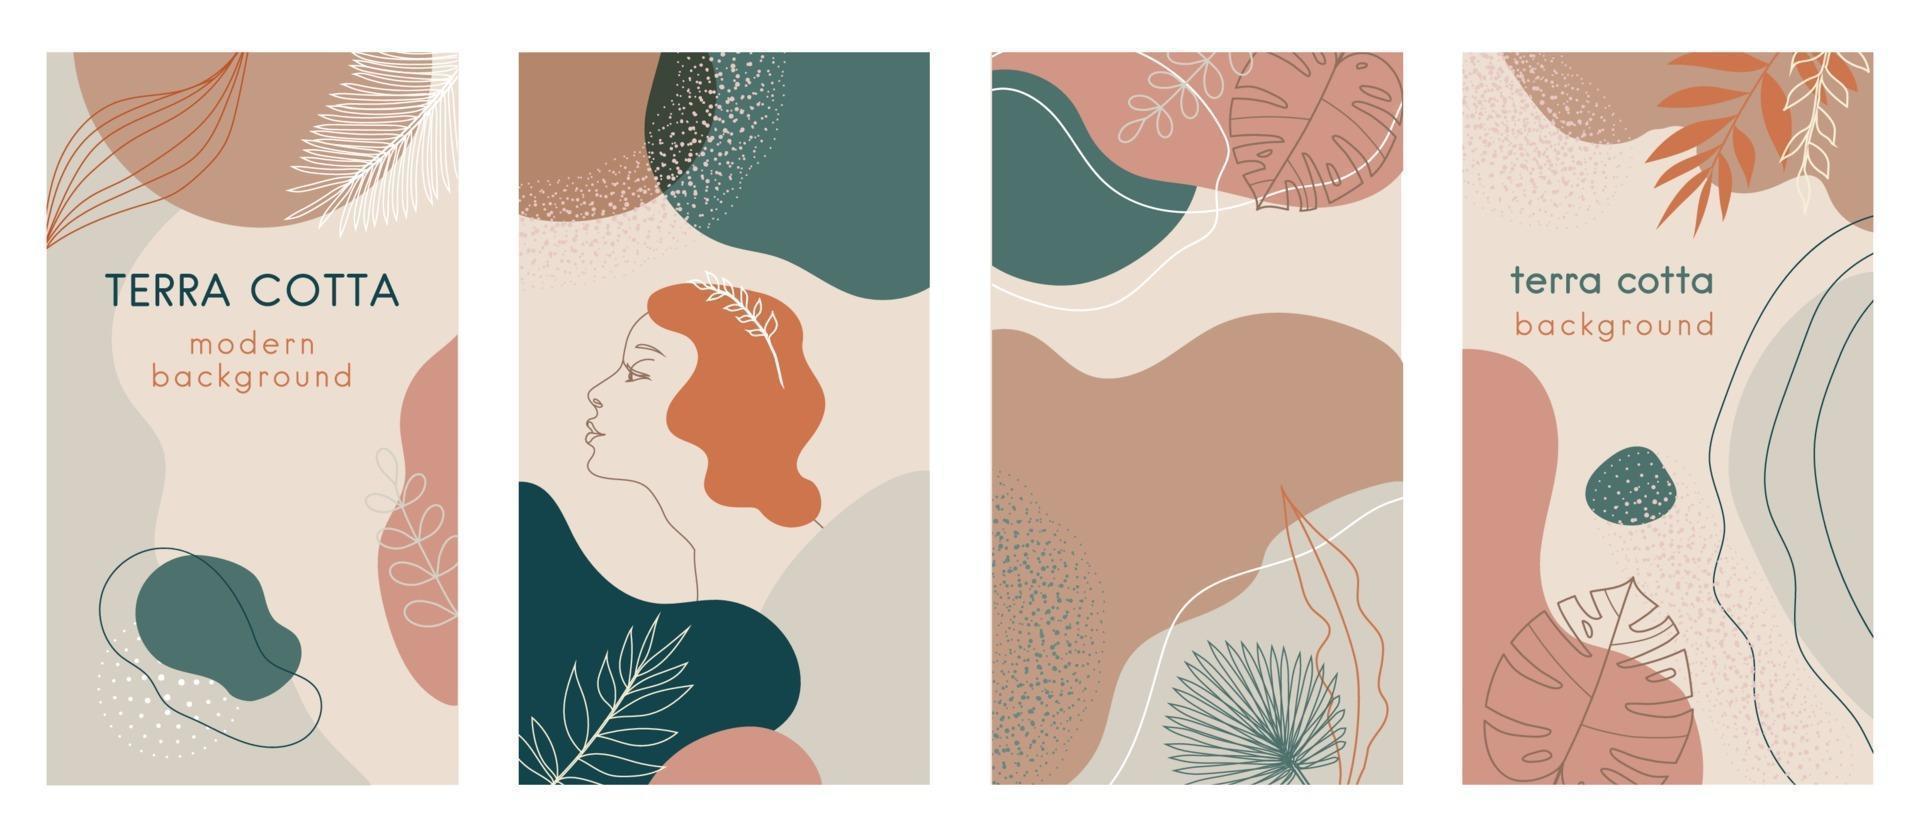 Conjunto de historias de redes sociales de fondos modernos abstractos con combinaciones de colores pastel terracota, formas y palmeras tropicales, hojas de monstera, icono de logotipo de cara de mujer de una línea. vector